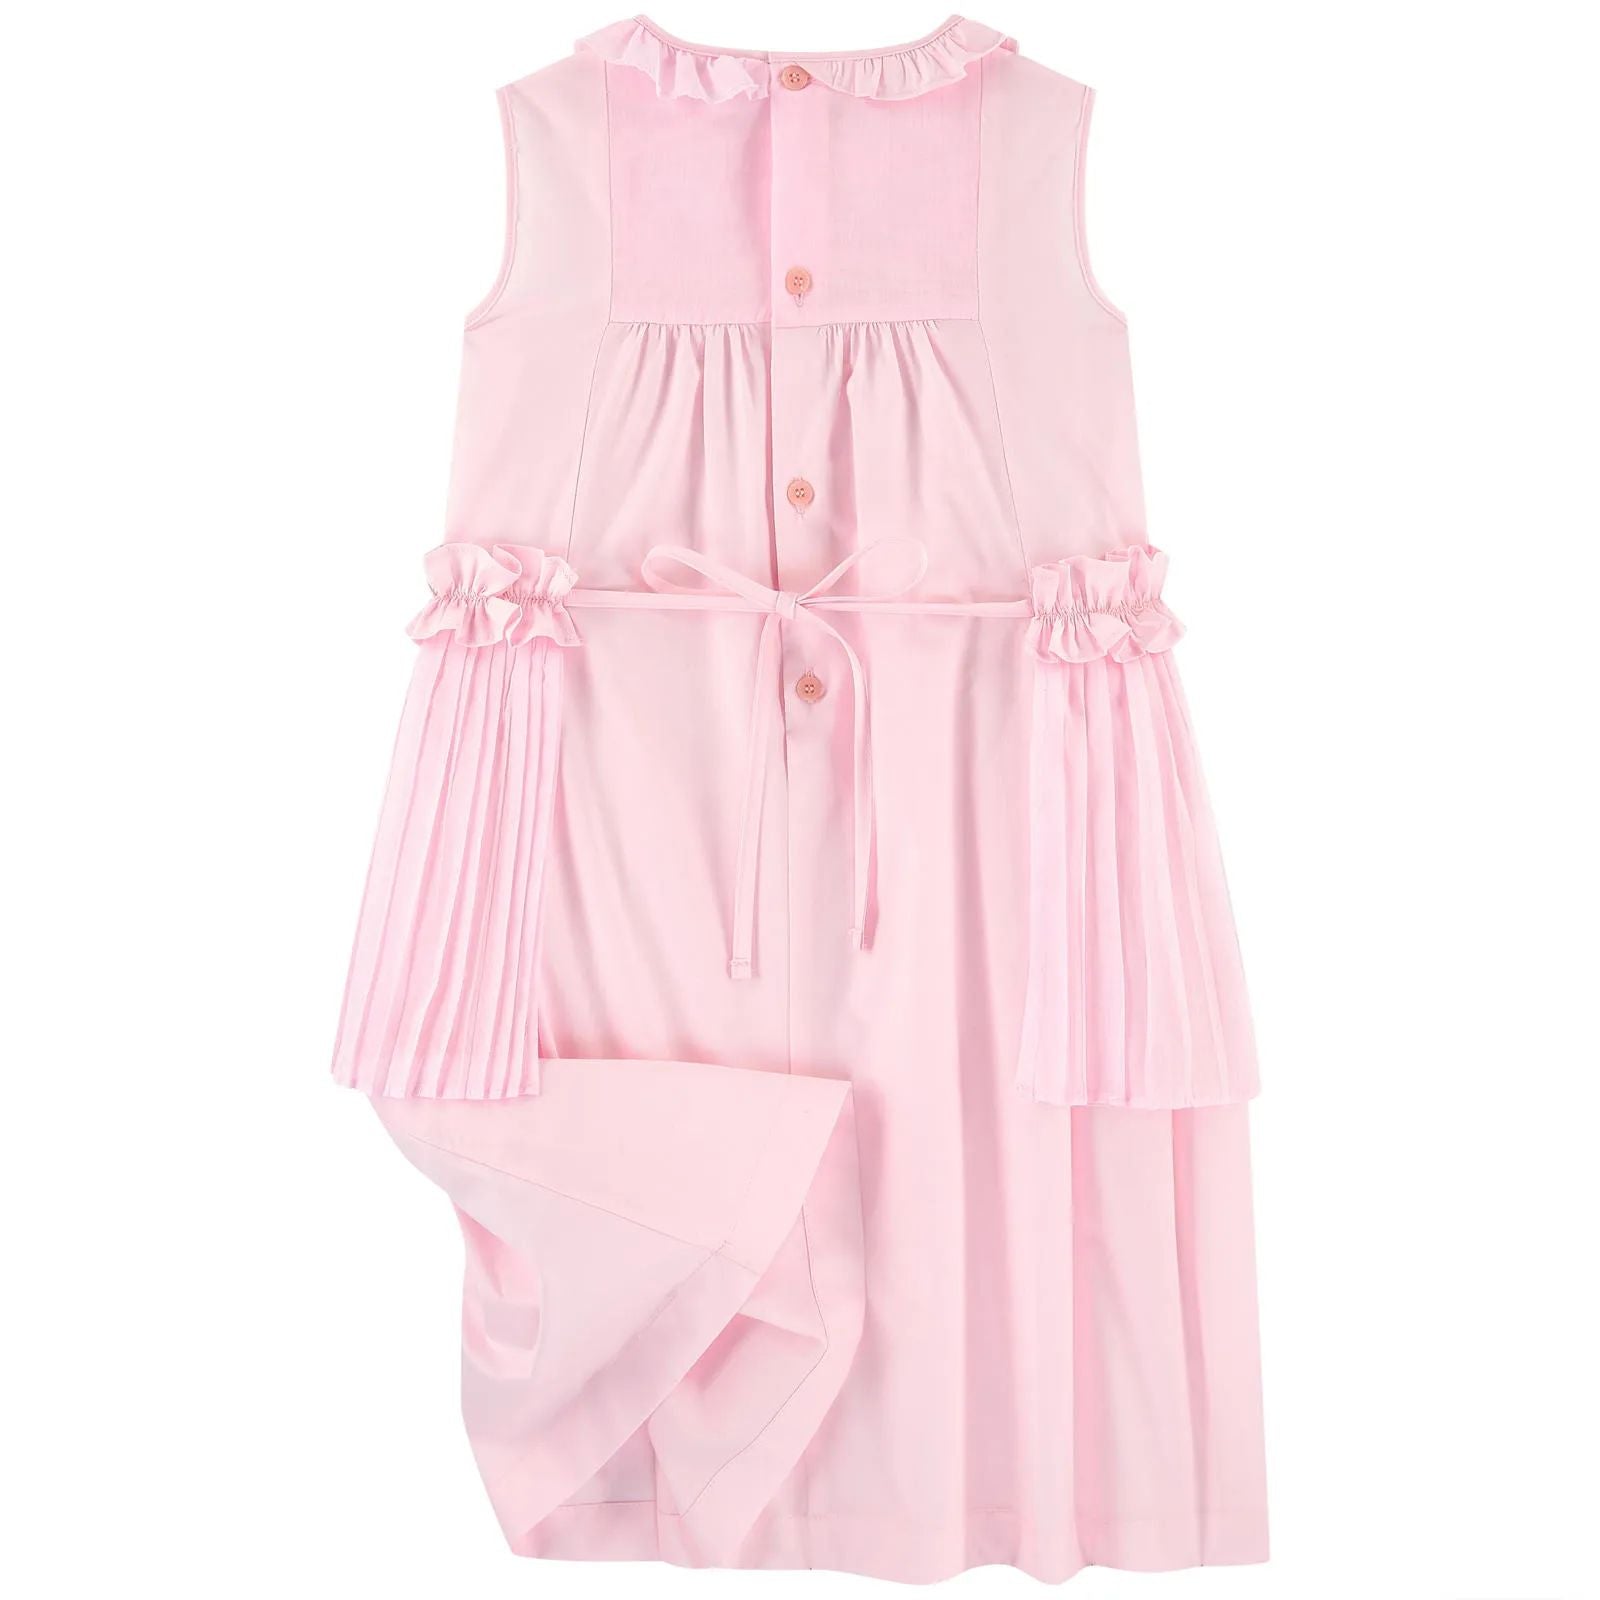 Girls Pink Ruffle Cotton Dress